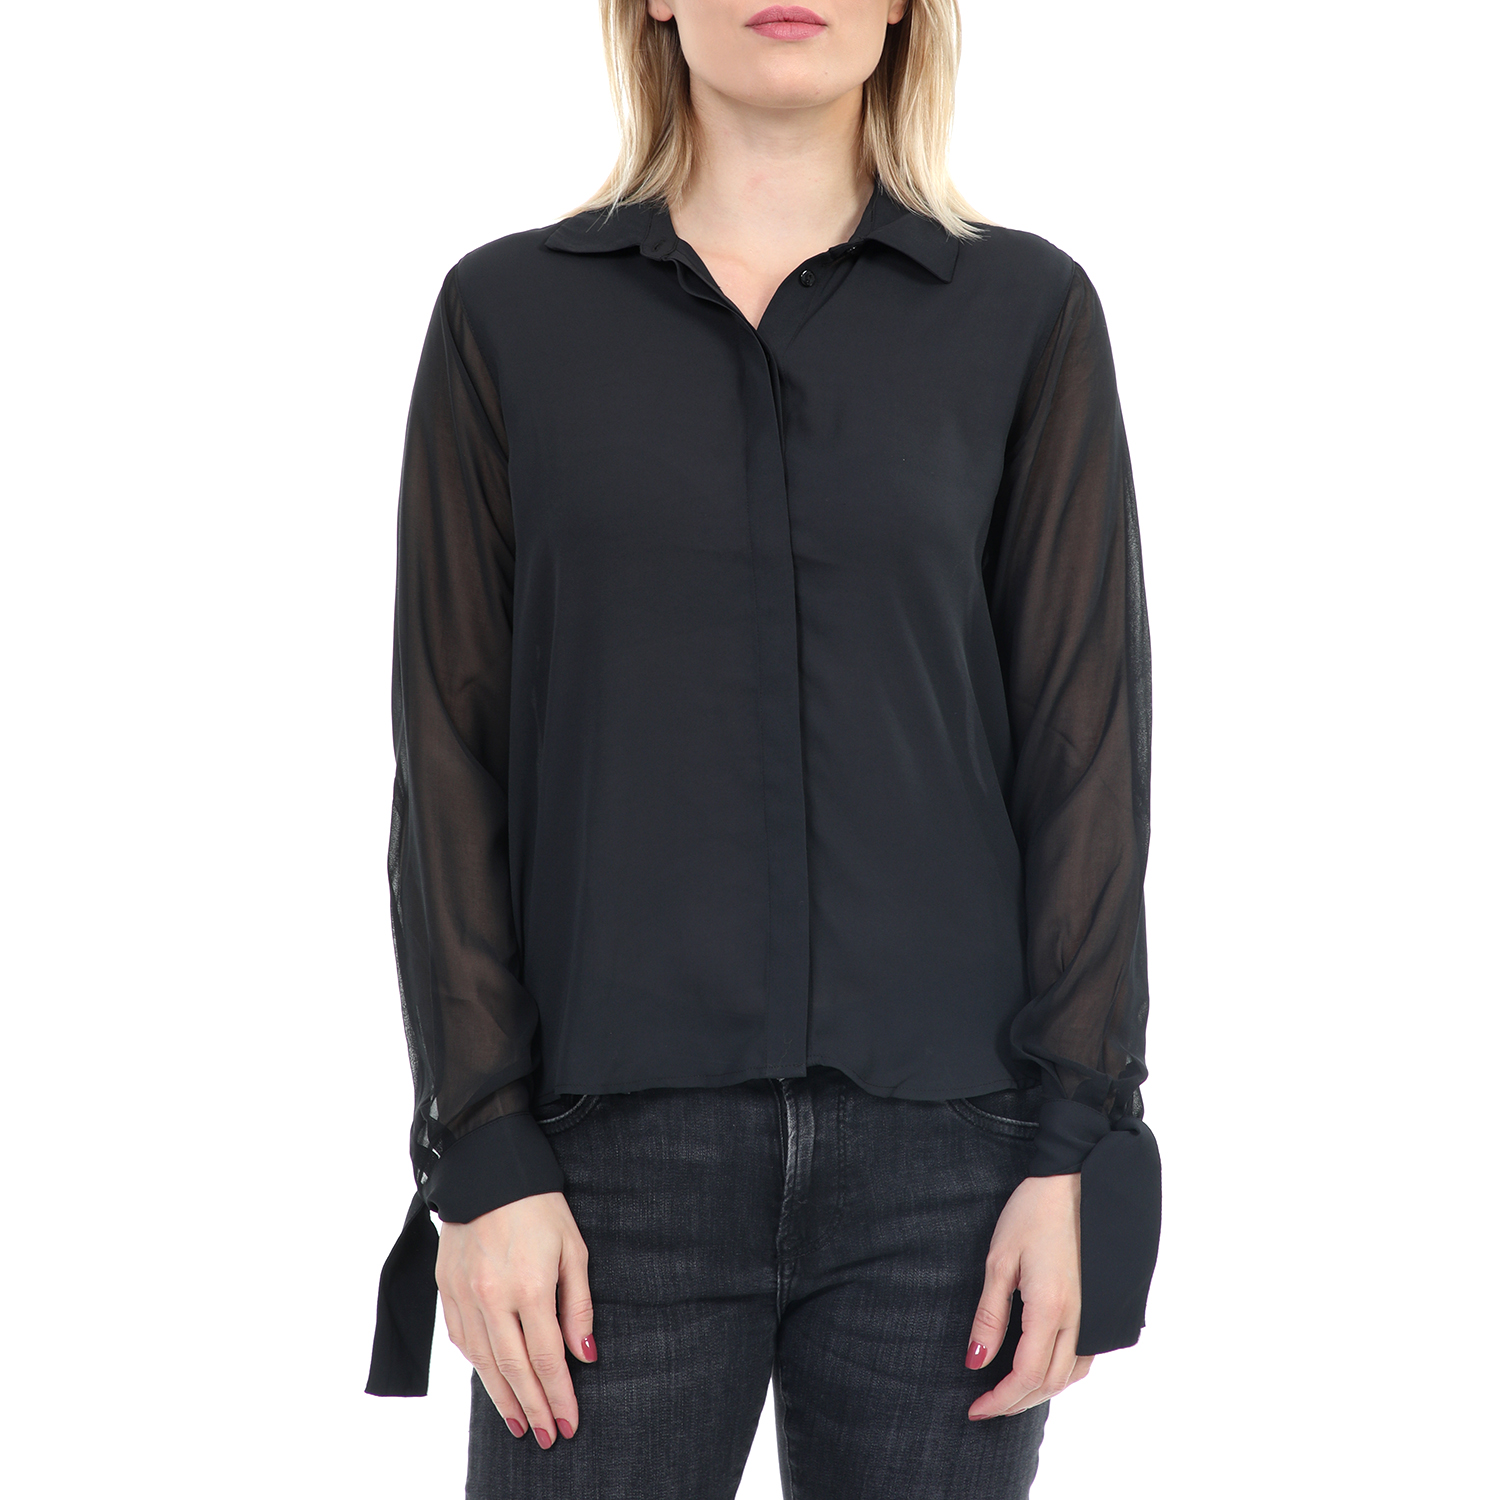 Γυναικεία/Ρούχα/Πουκάμισα/Μακρυμάνικα PEPE JEANS - Γυναικείο πουκάμισο PEPE JEANS STELLA μαύρο